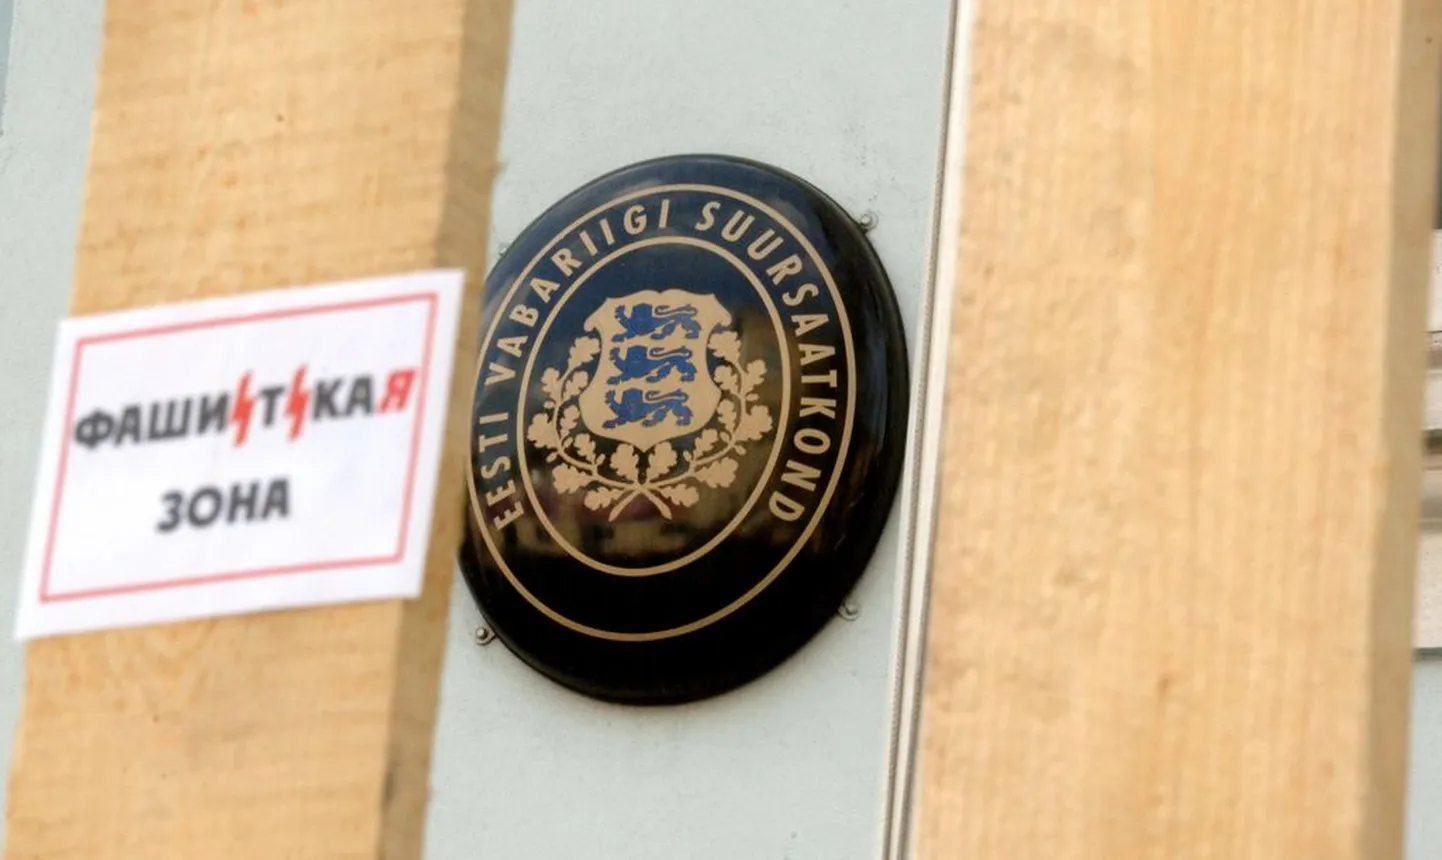 Eesti saatkond Moskvas..